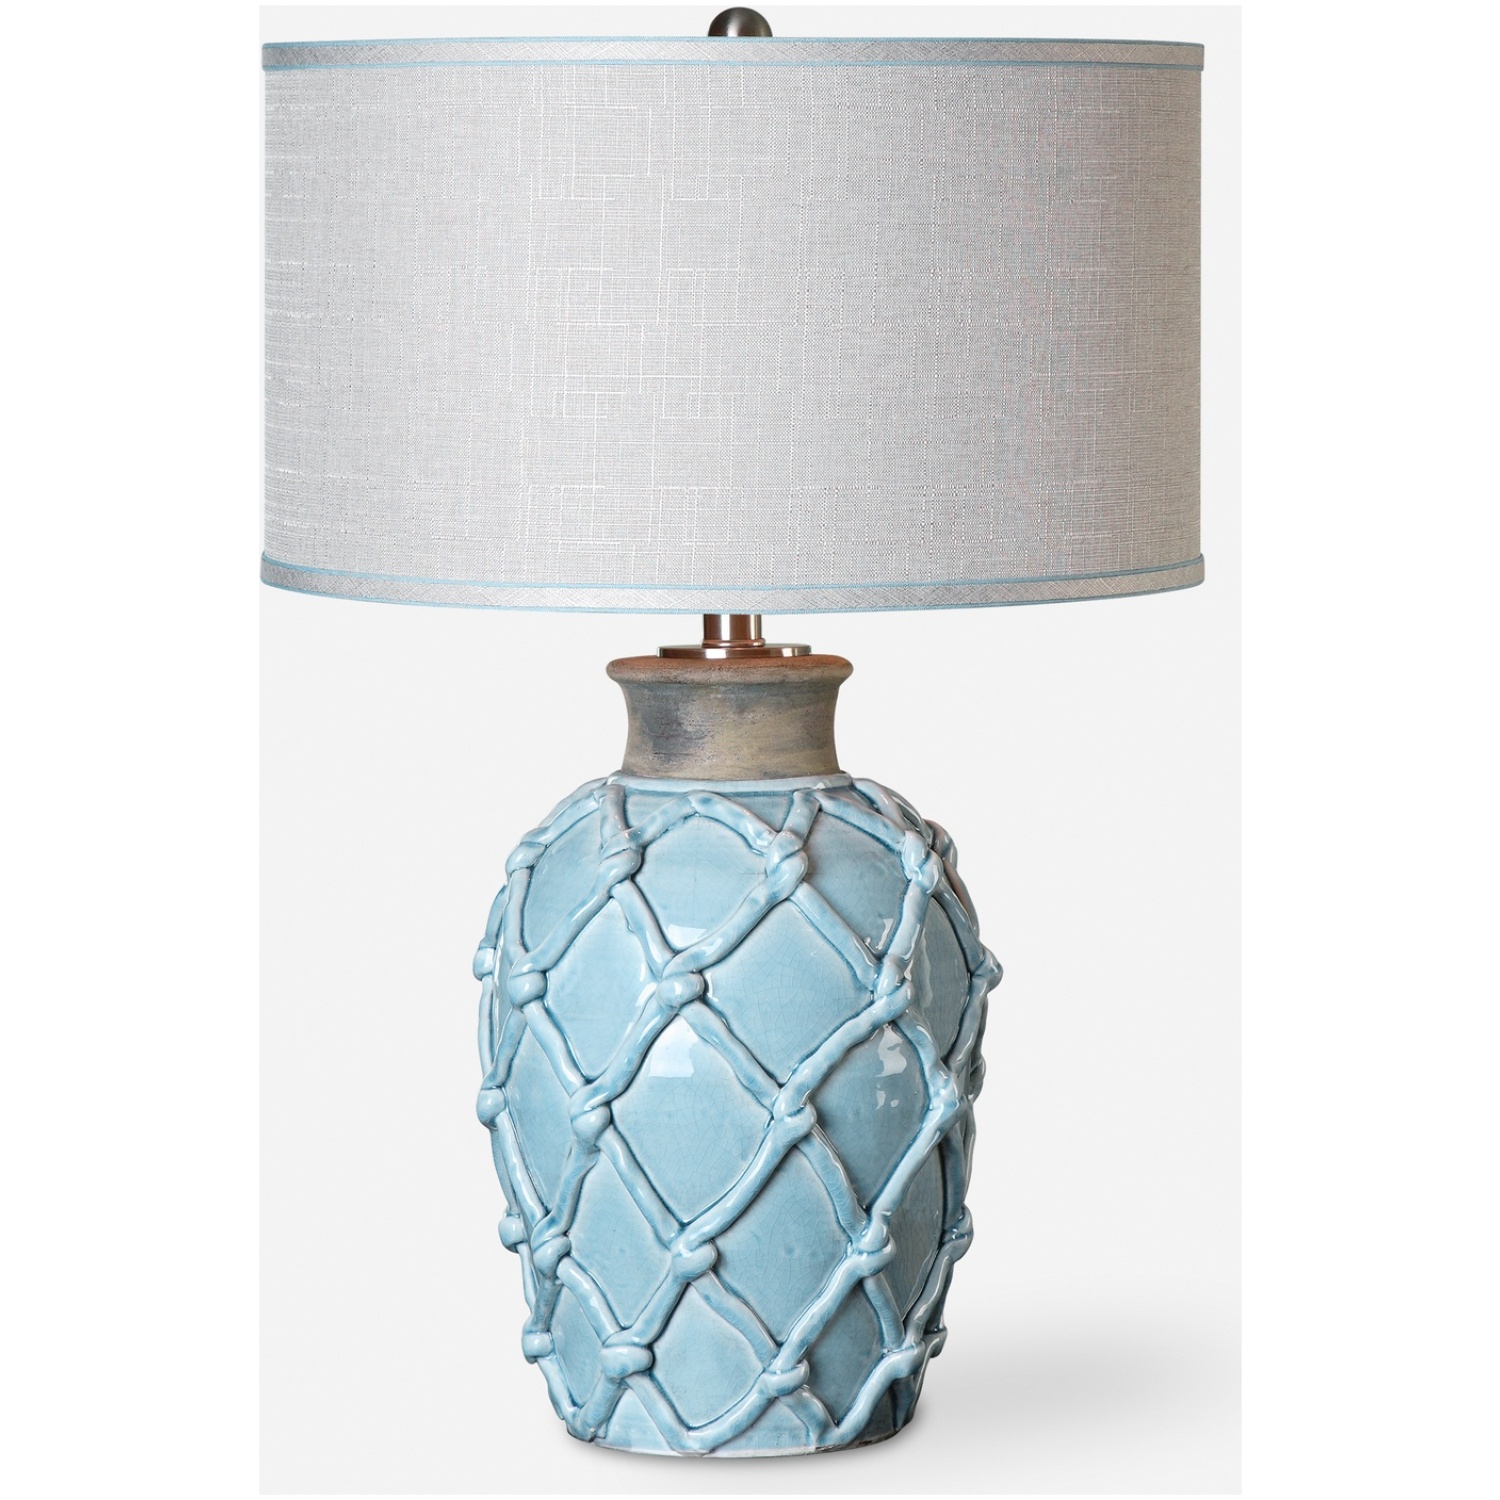 Parterre-Pale Blue Table Lamp